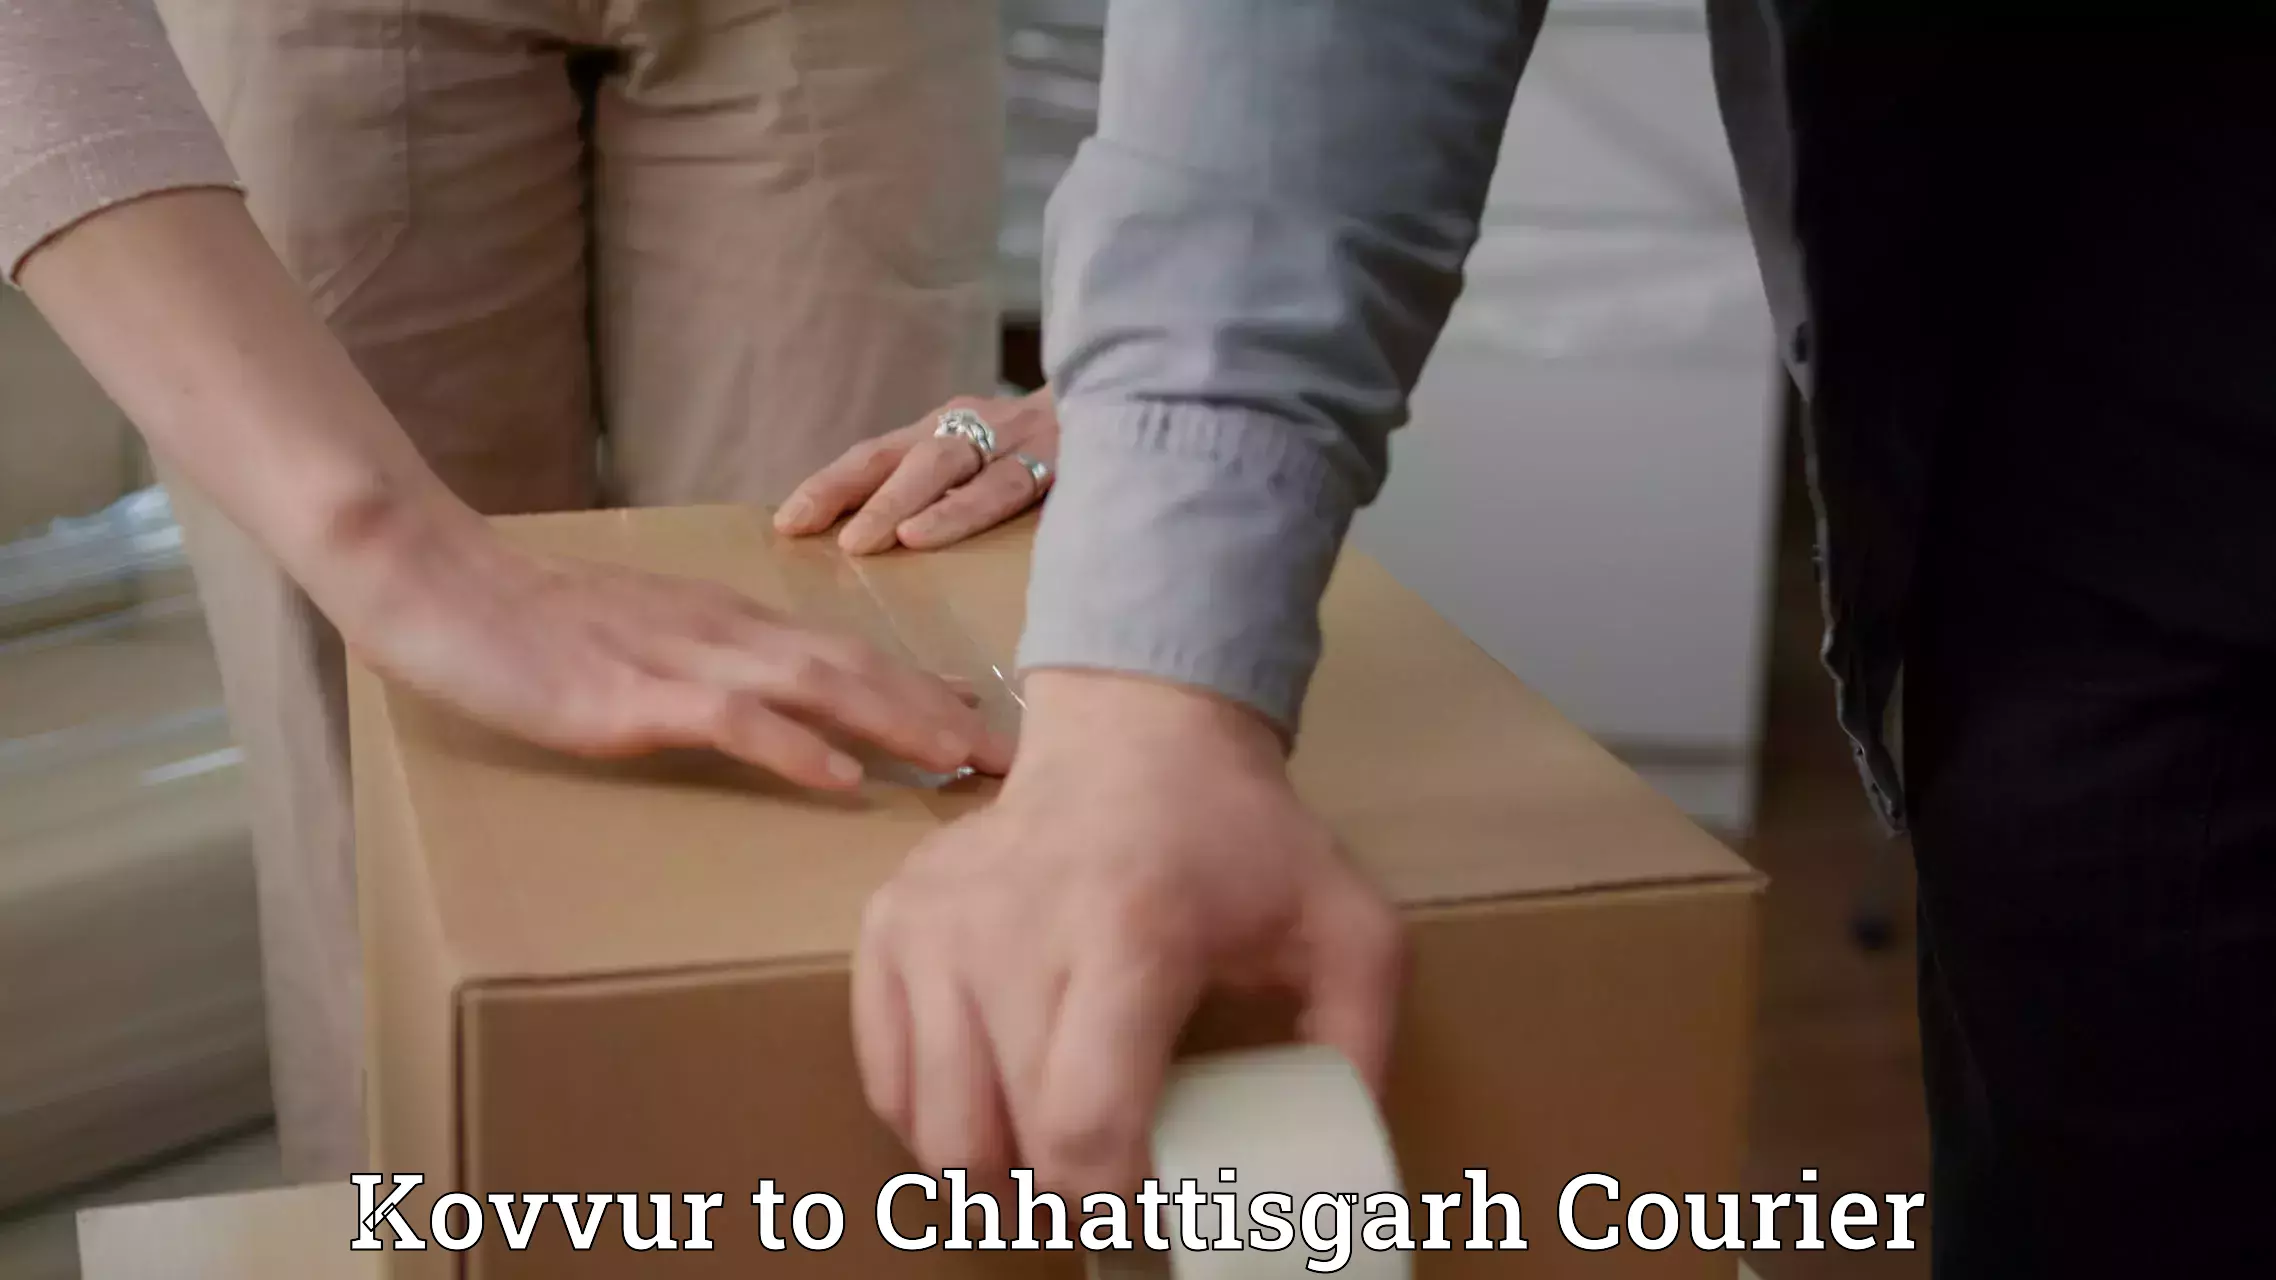 Pharmaceutical courier in Kovvur to Chhattisgarh